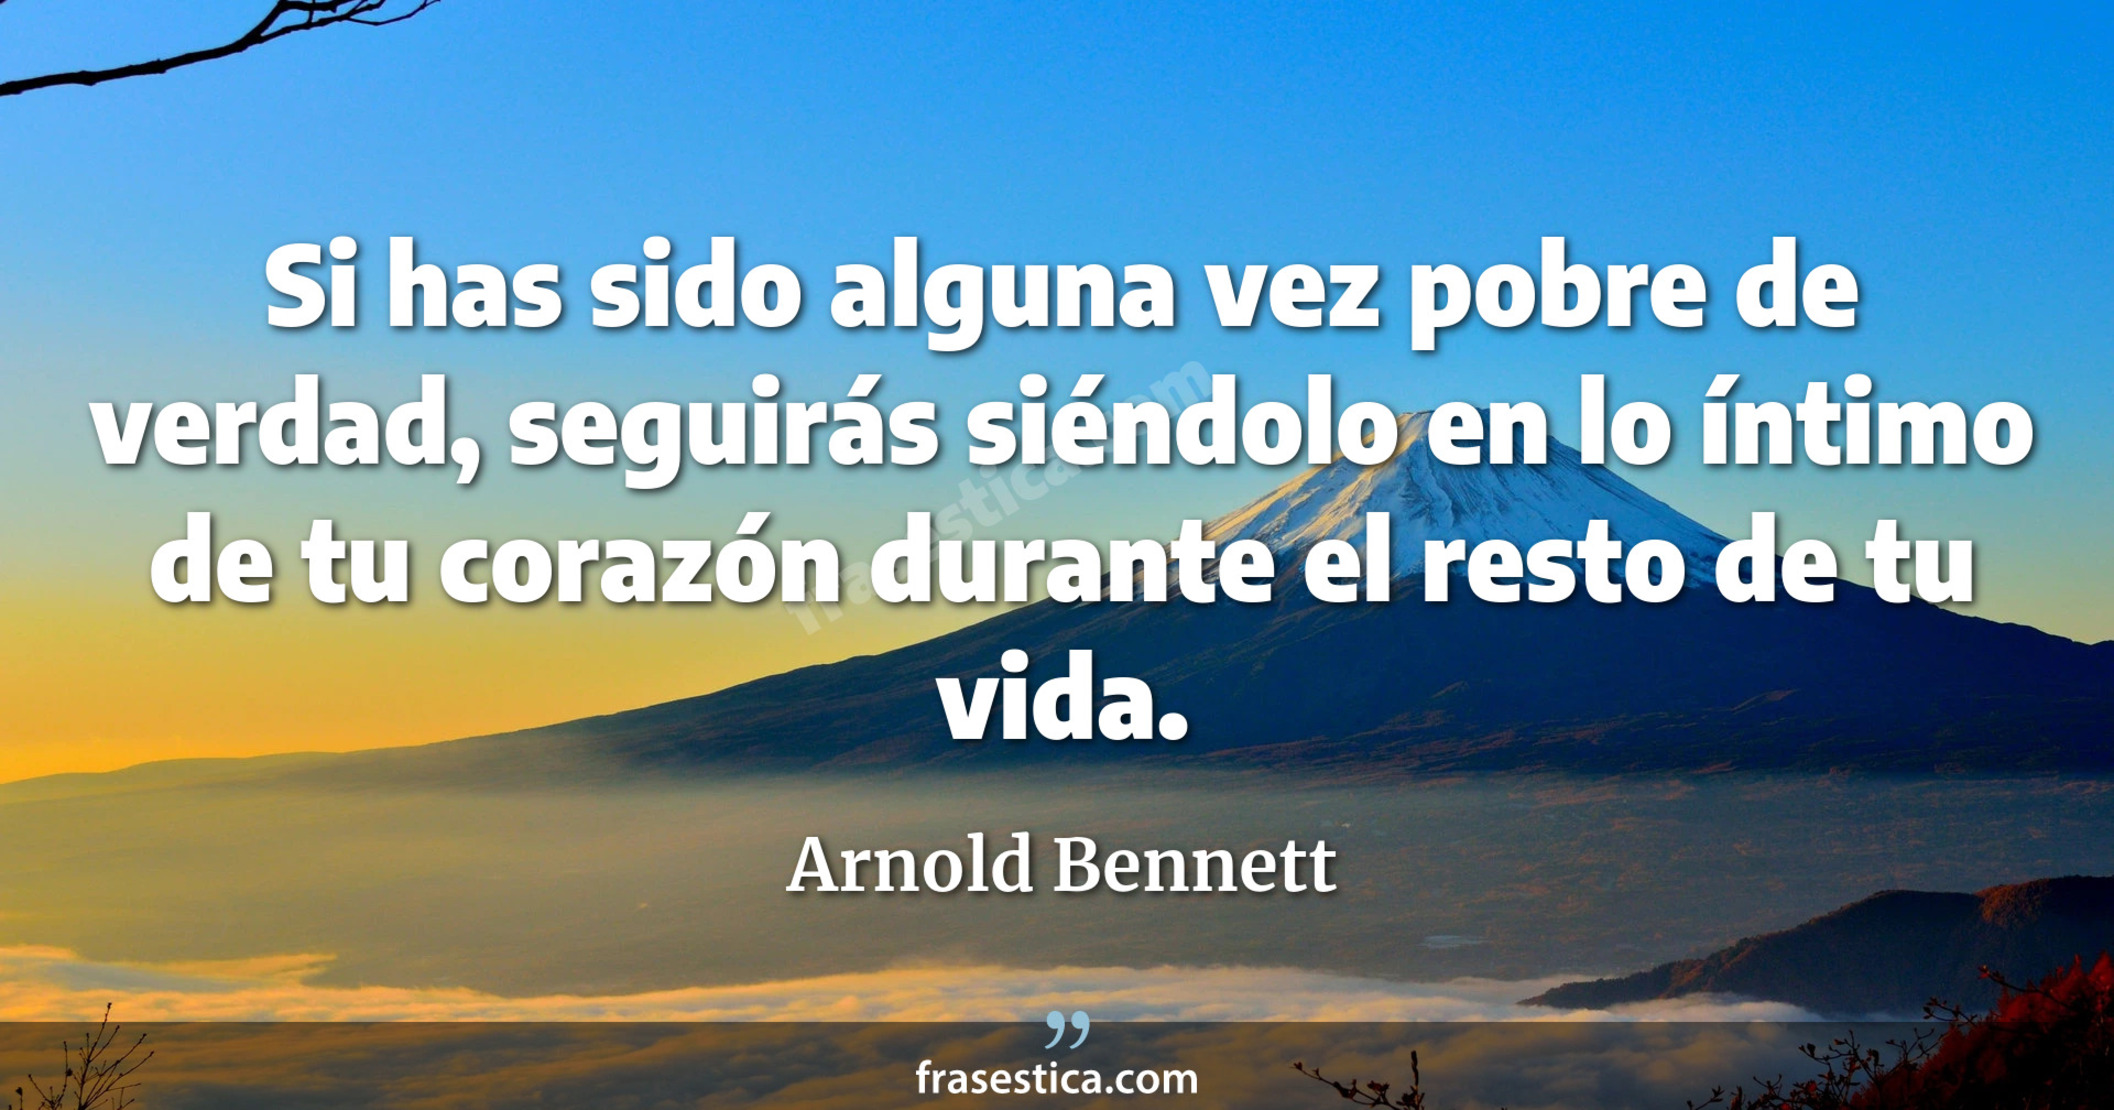 Si has sido alguna vez pobre de verdad, seguirás siéndolo en lo íntimo de tu corazón durante el resto de tu vida. - Arnold Bennett